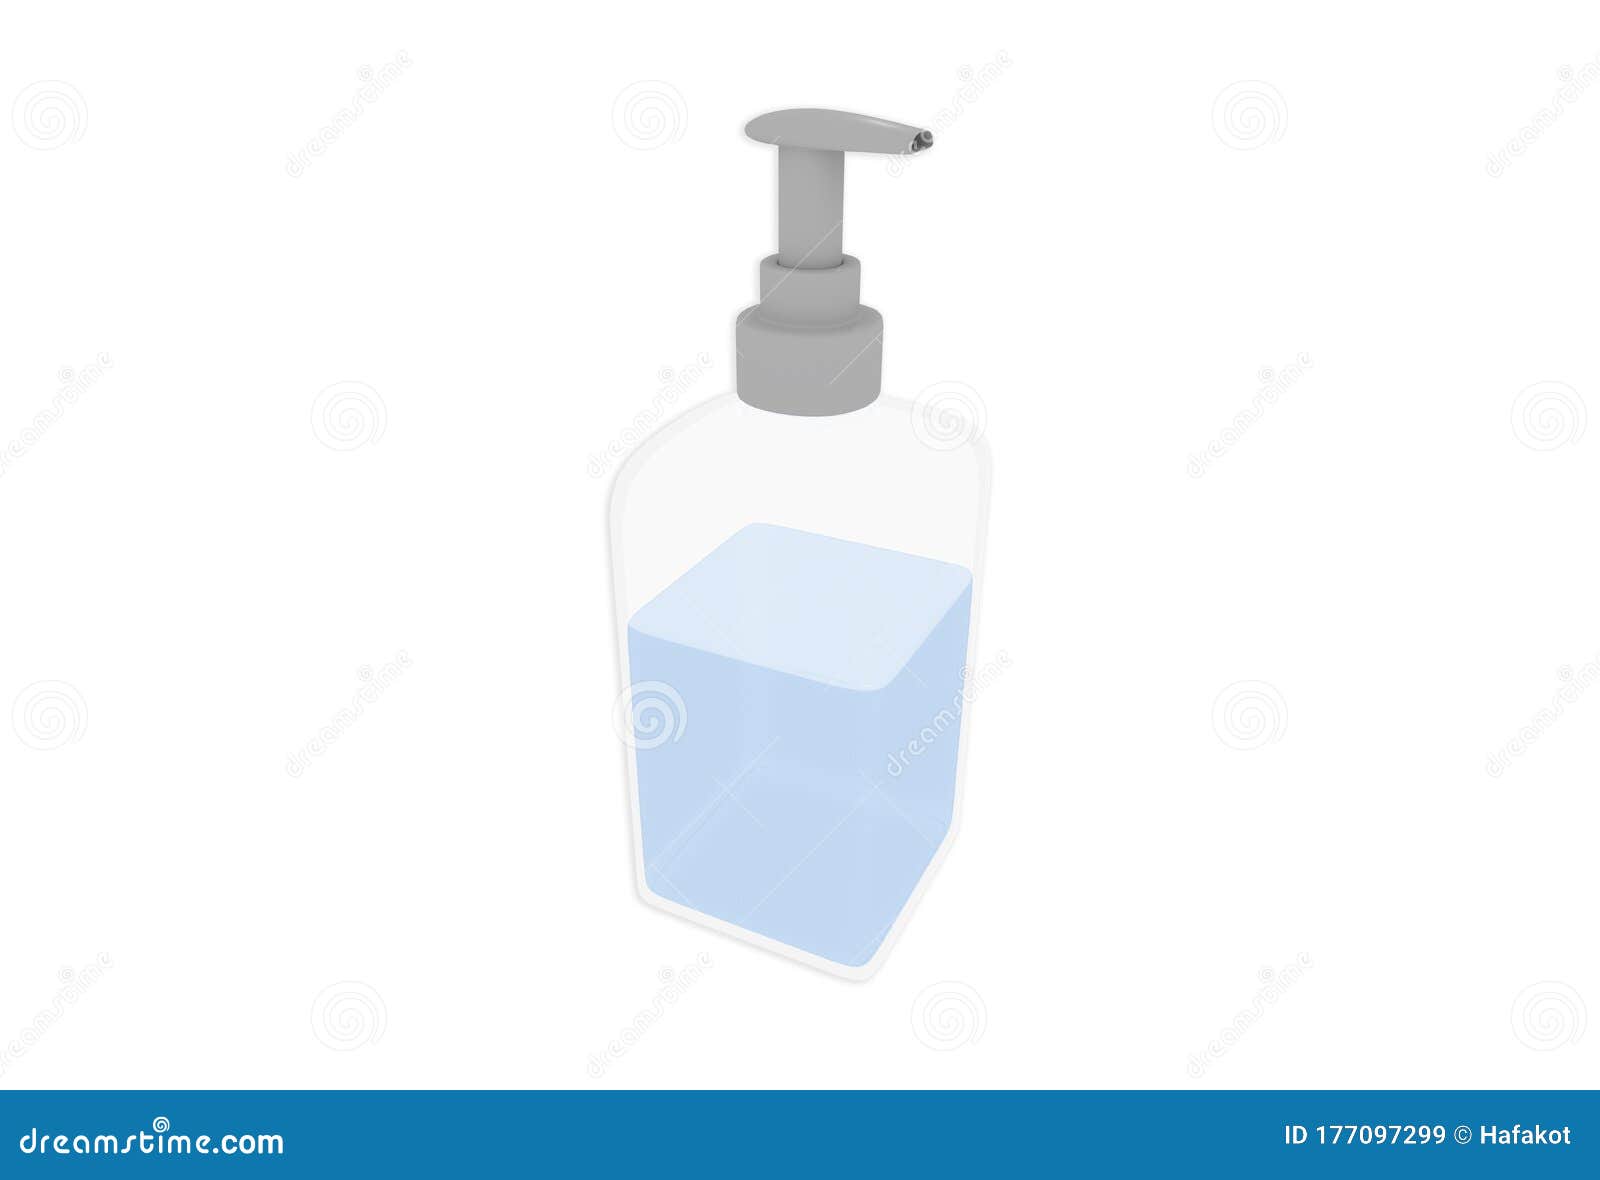 3d Illustration Of Hospital Hand Sanitizer Dispenser Stock